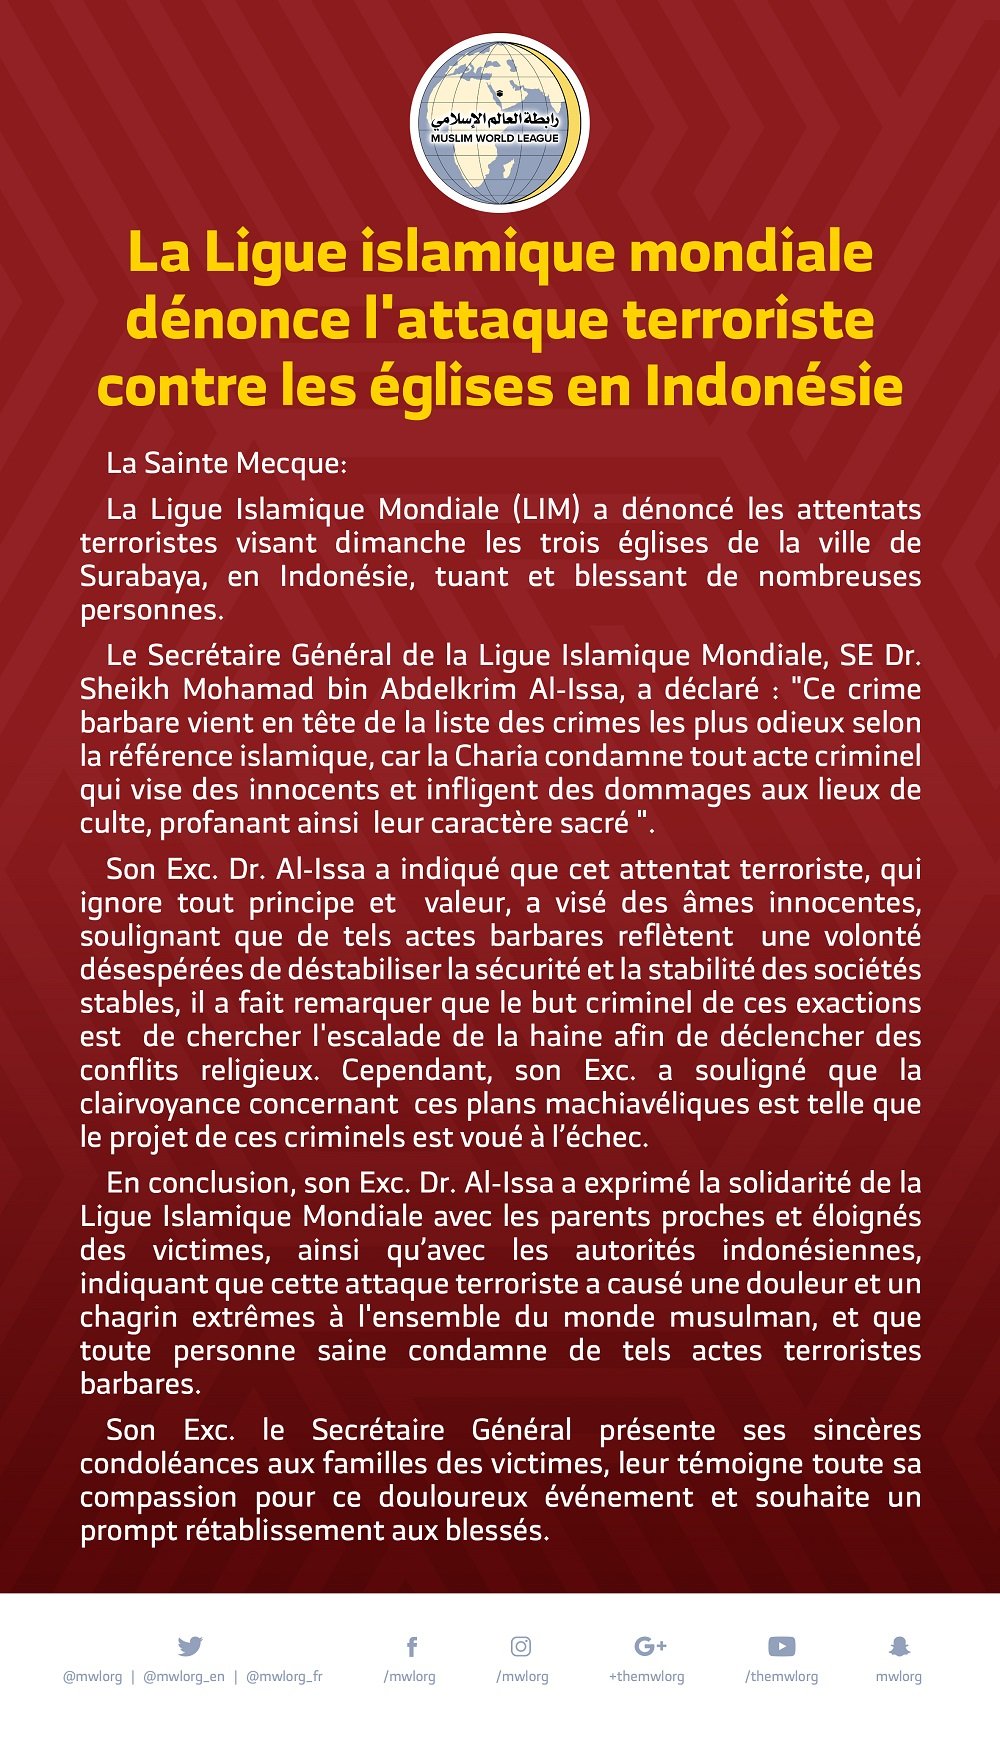 La Ligue islamique mondiale dénonce l'attaque terroriste contre les églises en Indonésie